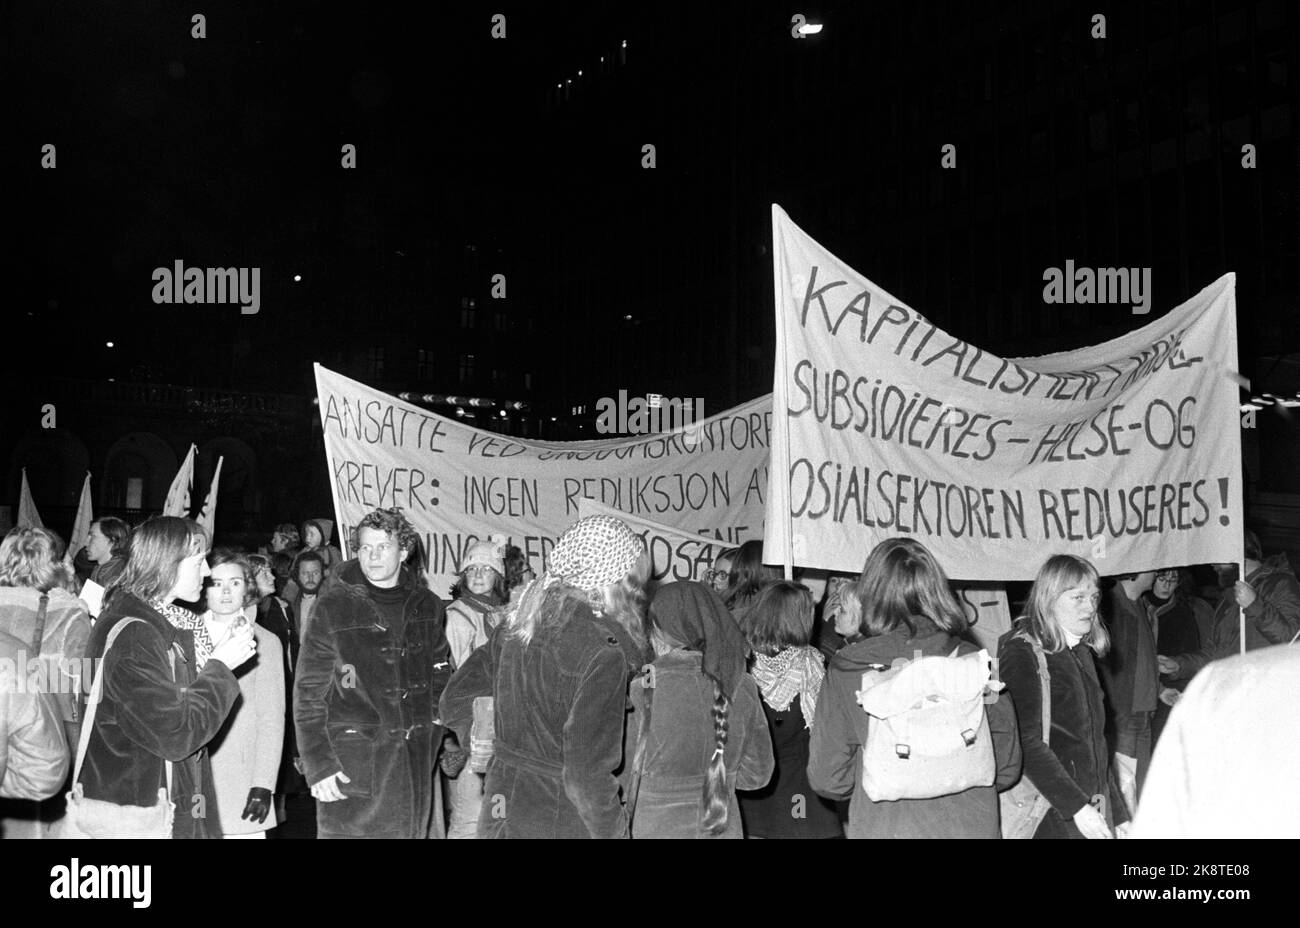 Oslo 19751106. Demonstration gegen den Staatshaushalt, den „Krisenhaushalt“ im Gesundheits- und Sozialsektor in Oslo. Slogans: „Kapitalisten werden subventioniert, der Gesundheits- und Sozialsektor wird reduziert“. Foto Arild Hordnes / NTB / NTB Stockfoto